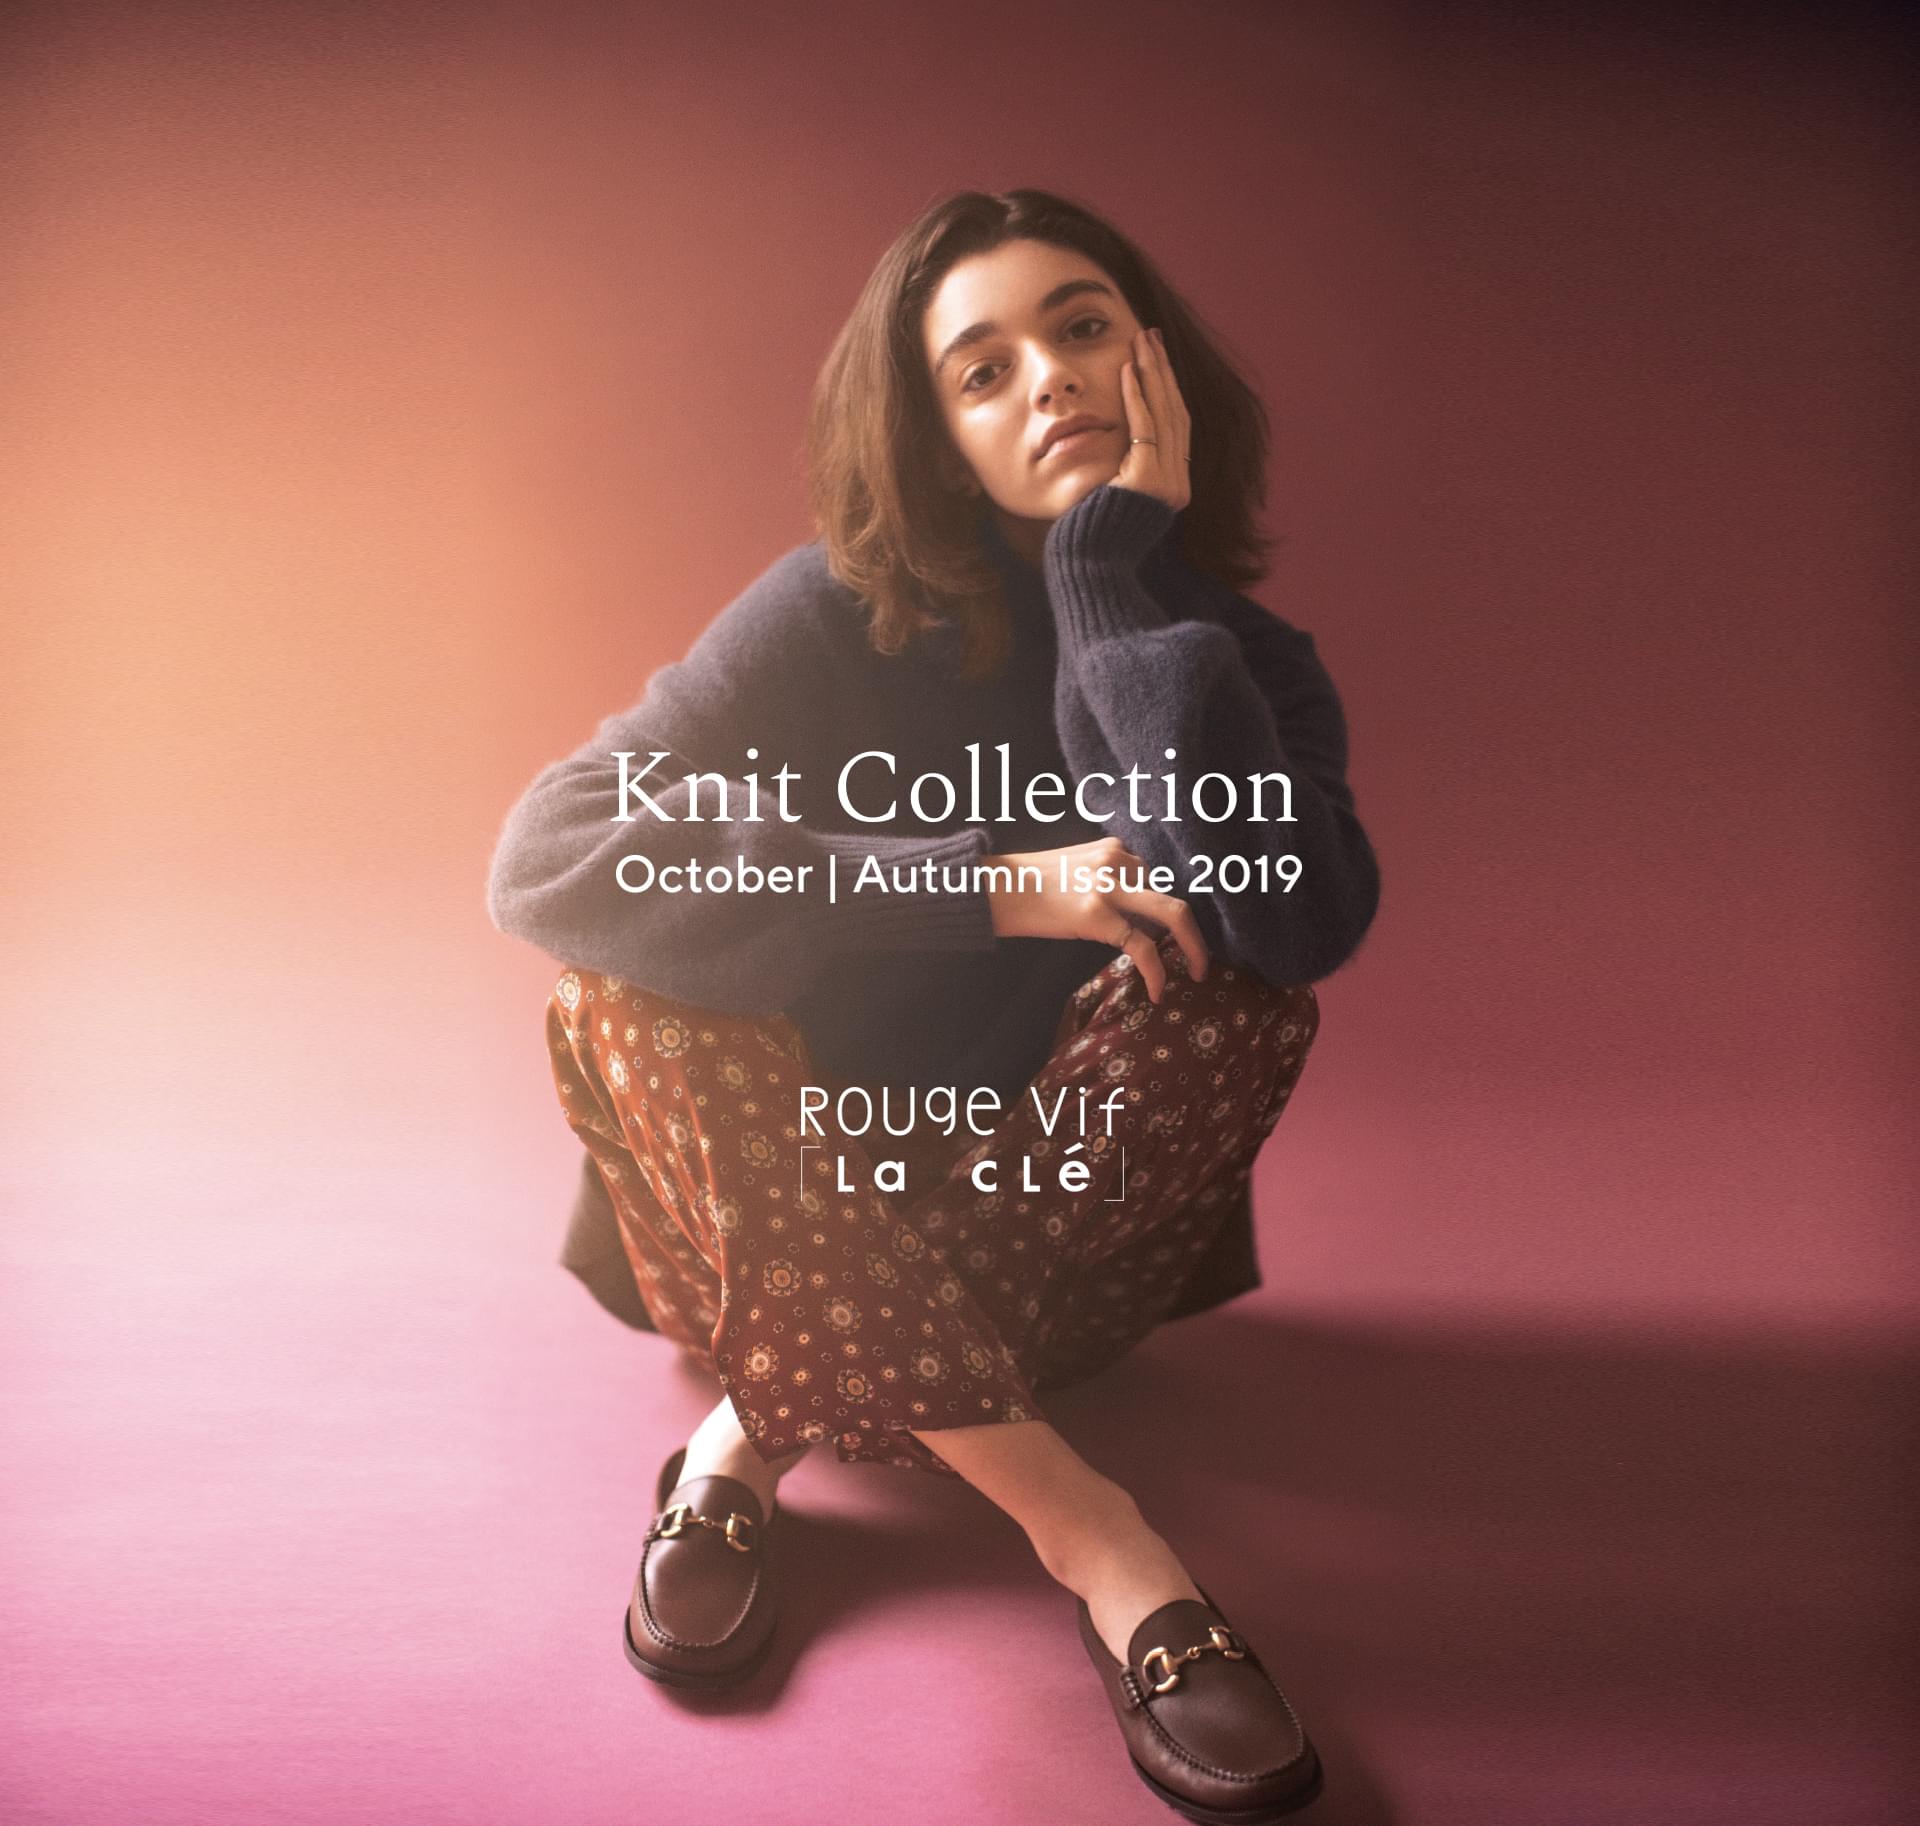 Knit Collection - Rouve vif la cle